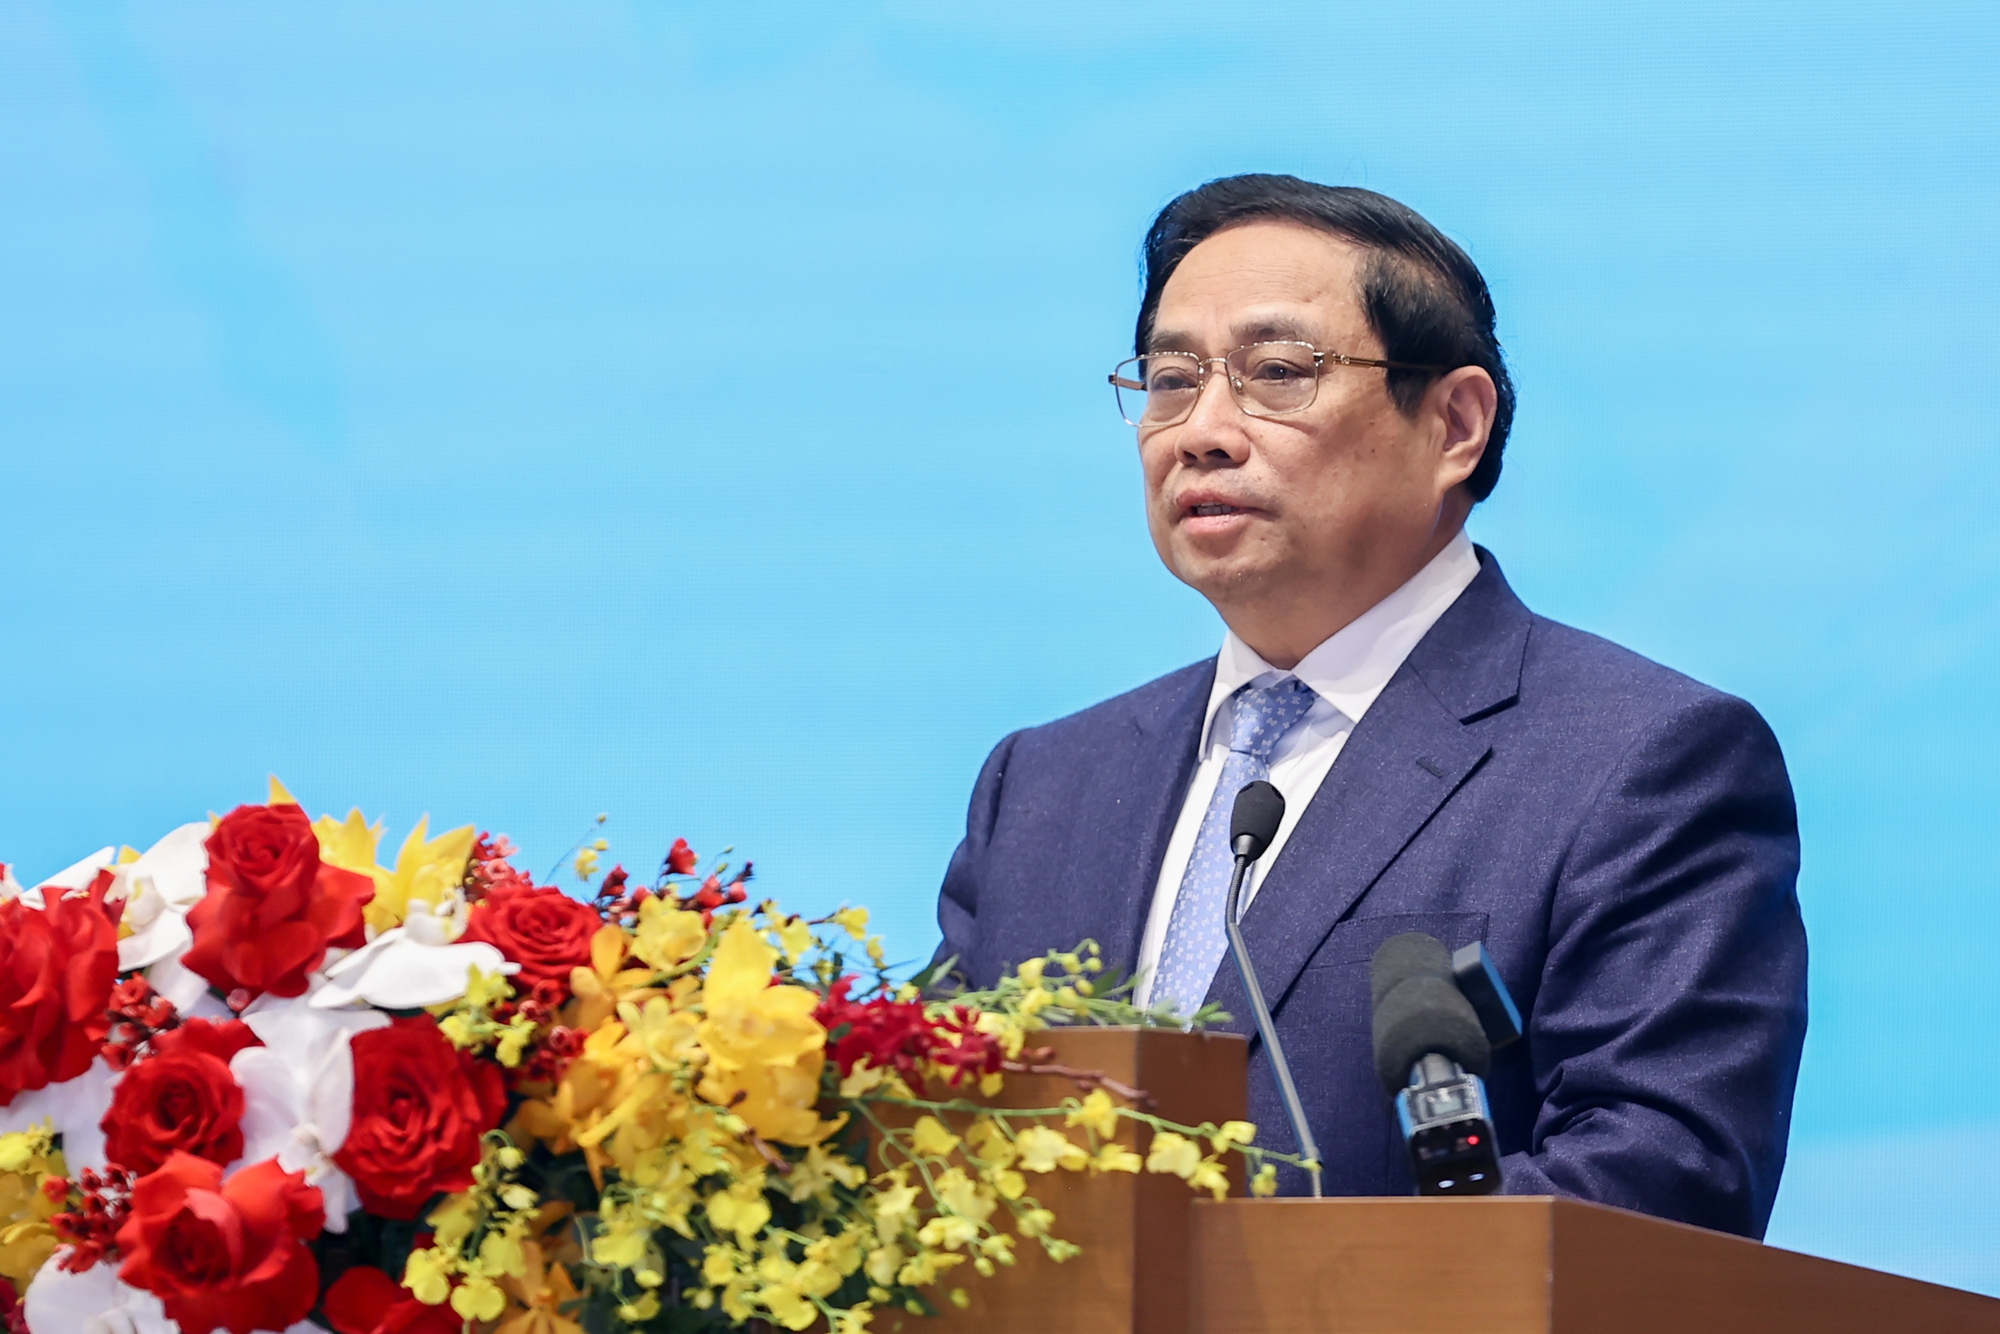 Thủ tướng Phạm Minh Chính nhấn mạnh, hợp tác kinh tế, đầu tư giữa hai nước là nhu cầu khách quan, có ý nghĩa chiến lược - Ảnh: VGP/Nhật Bắc